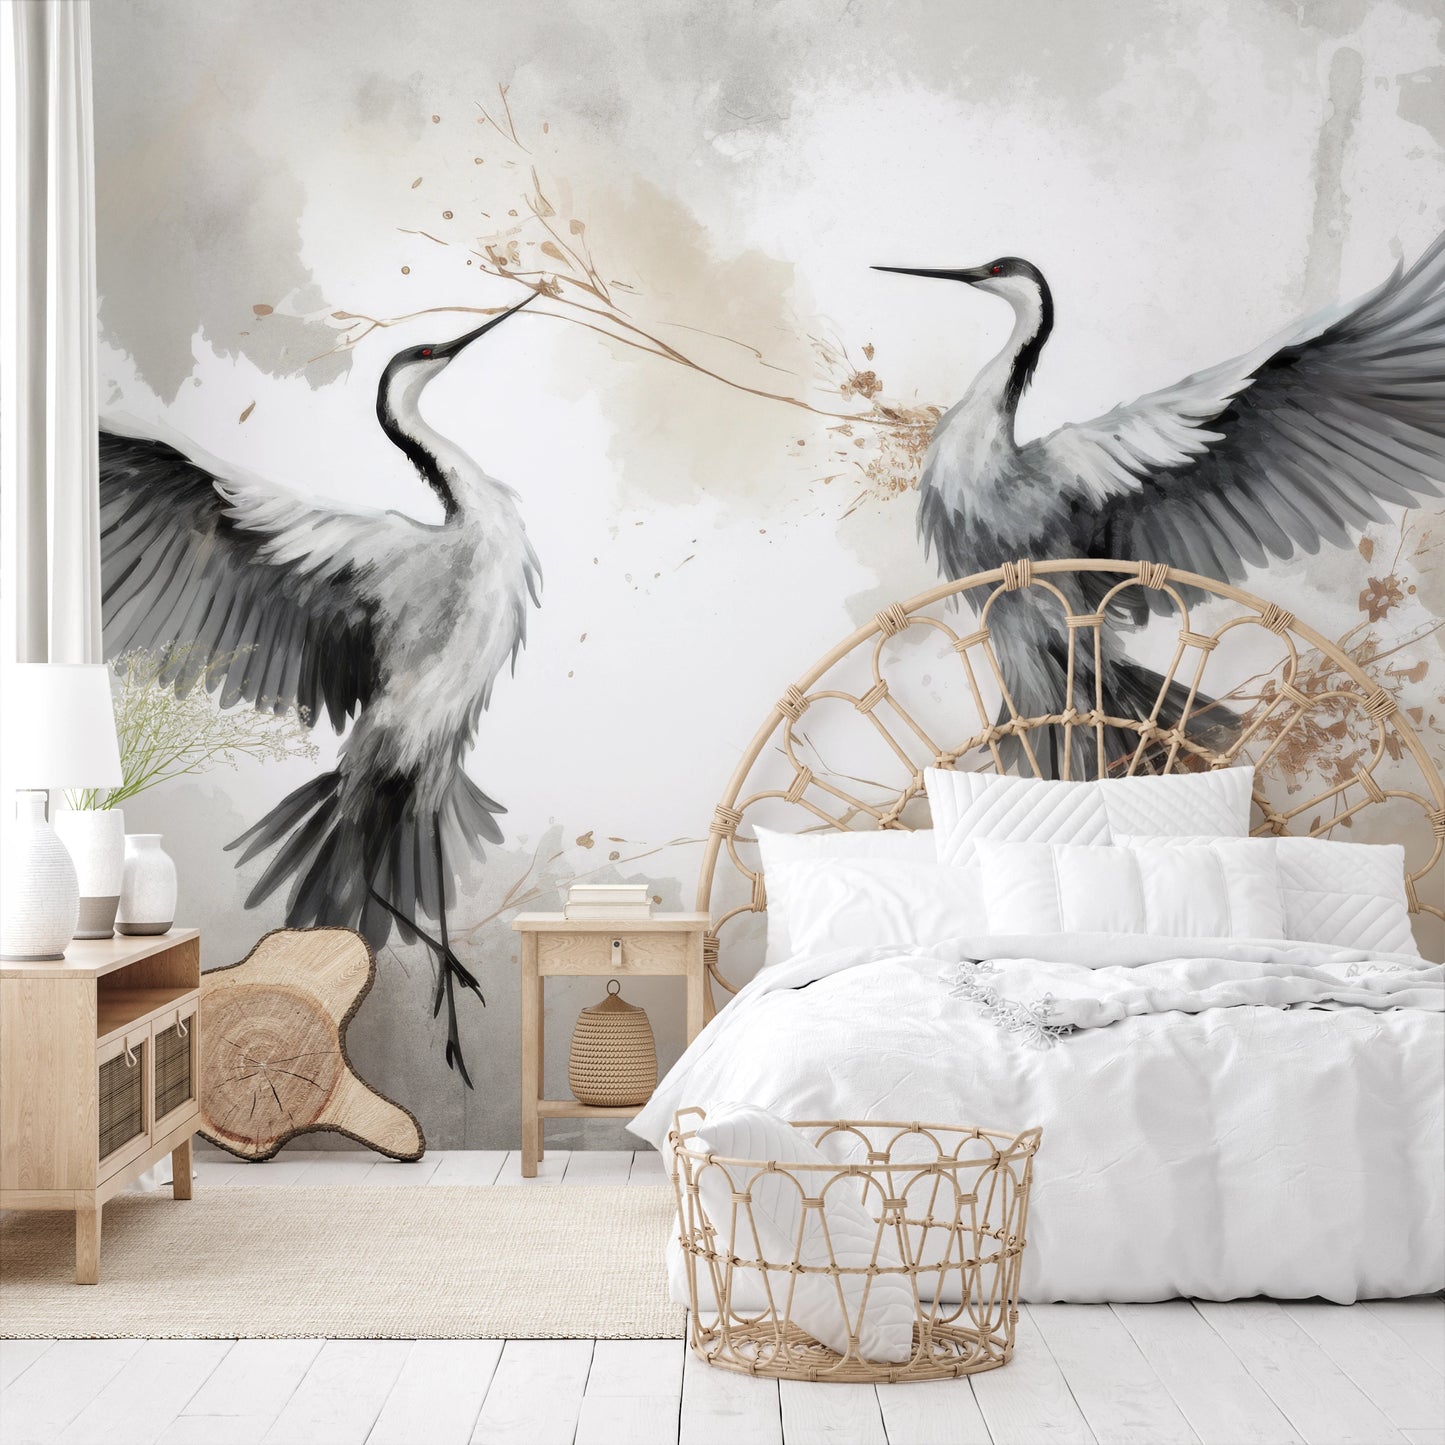 Wzór fototapety o nazwie Wings of Freedom pokazanej w kontekście pomieszczenia.